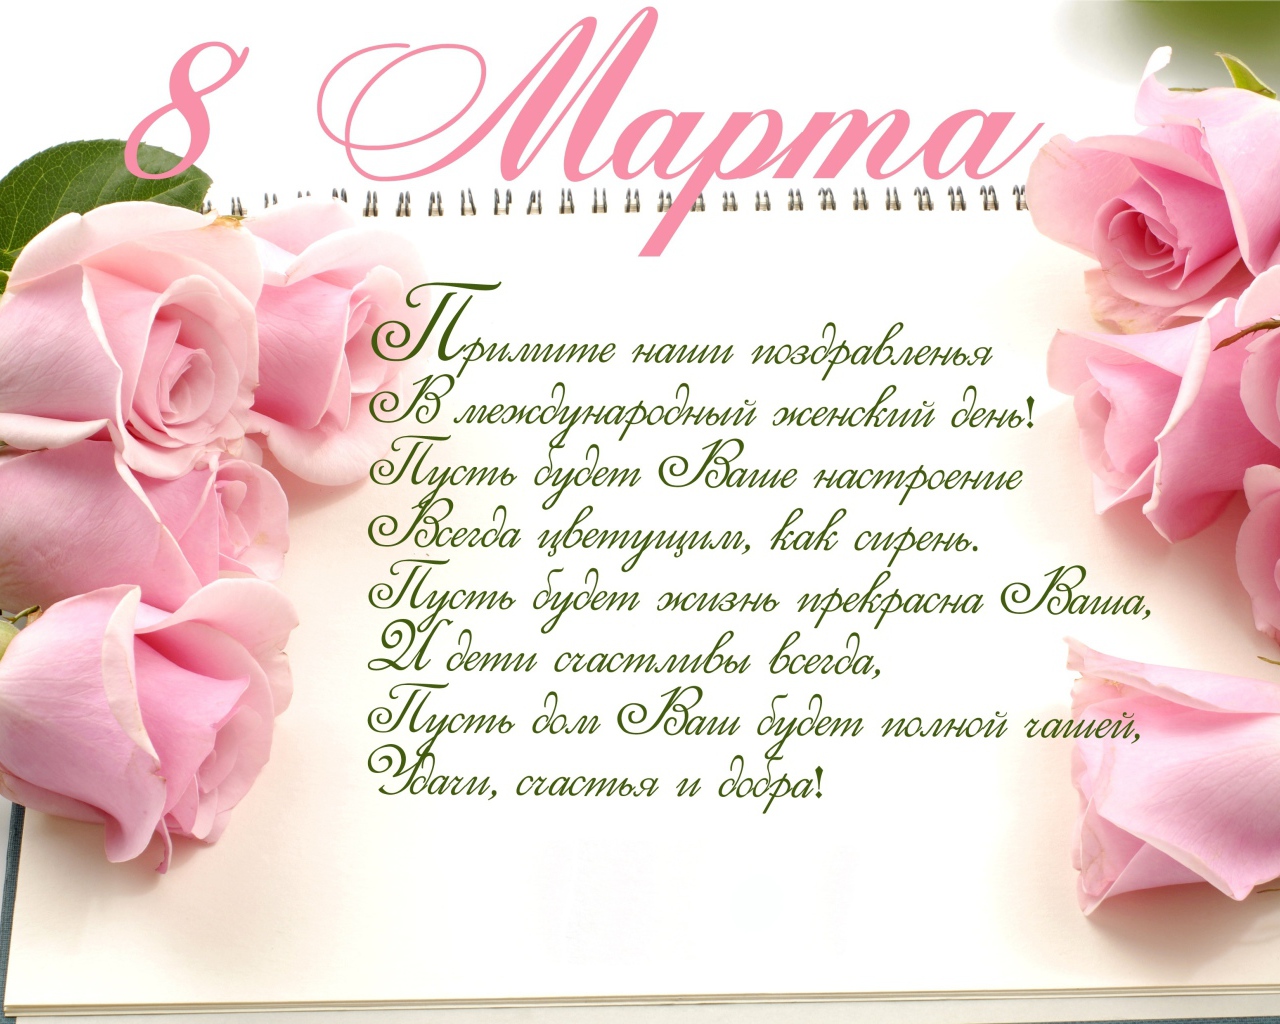 Красивая открытка с поздравлением на 8 марта  с розовыми розами